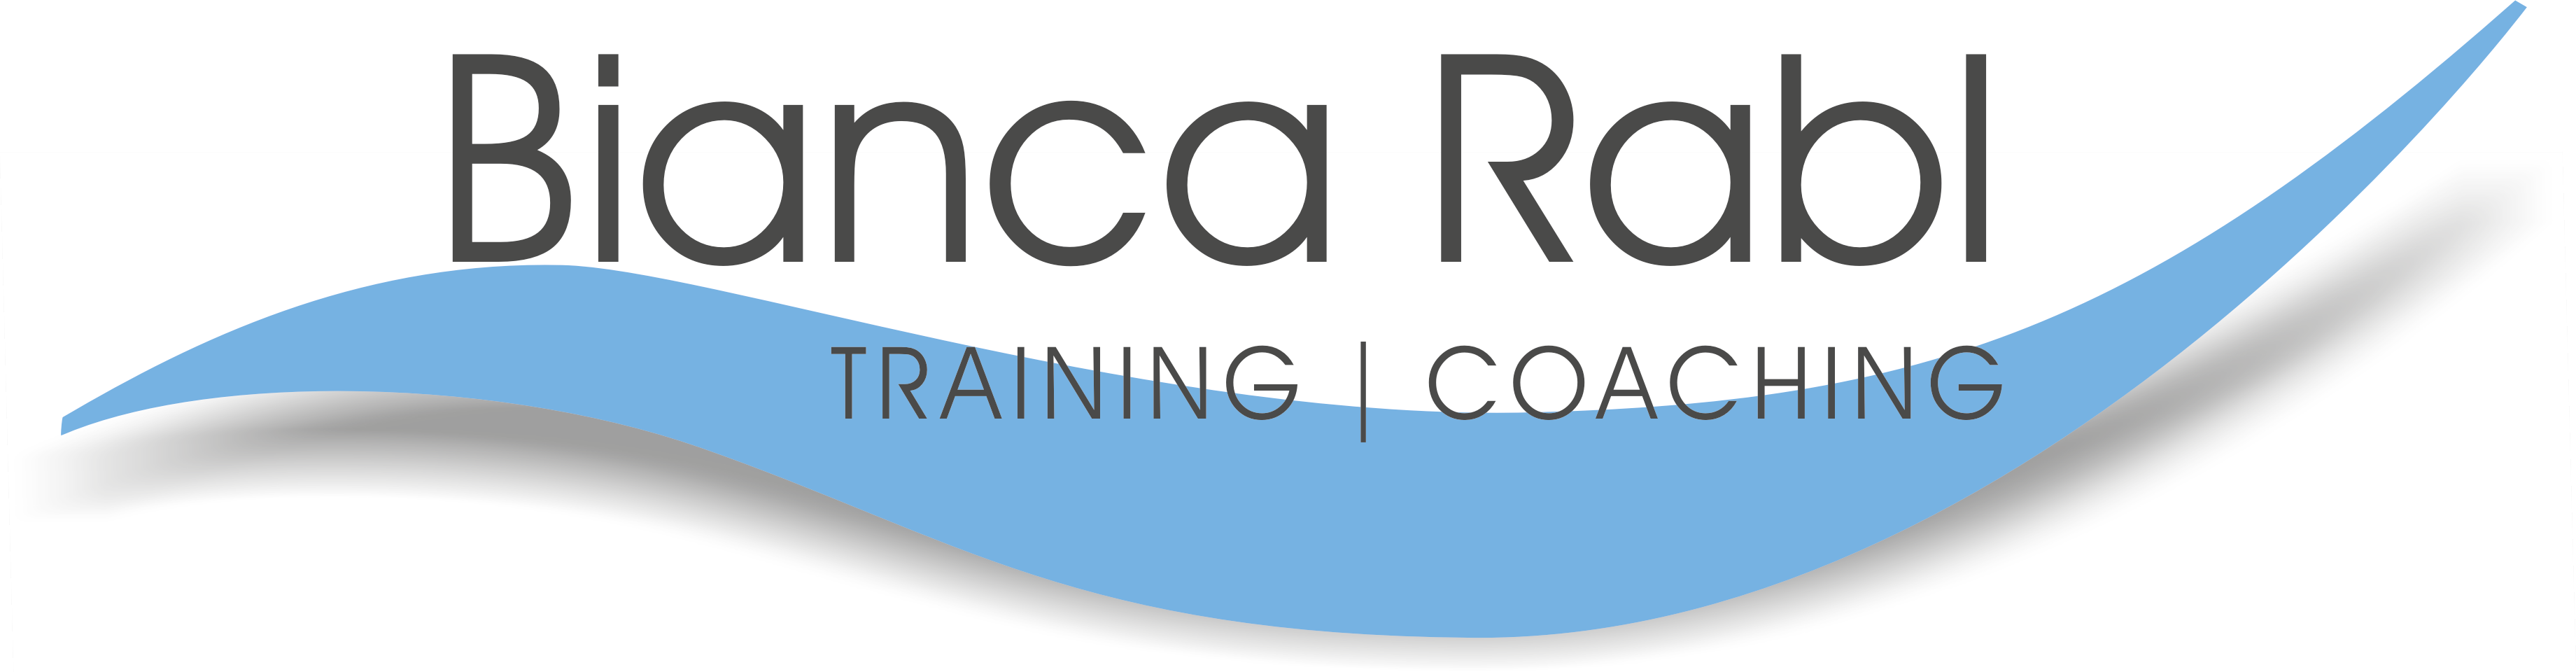 Willkommen bei Bianca Rabl Training und Coaching Ettlingen!